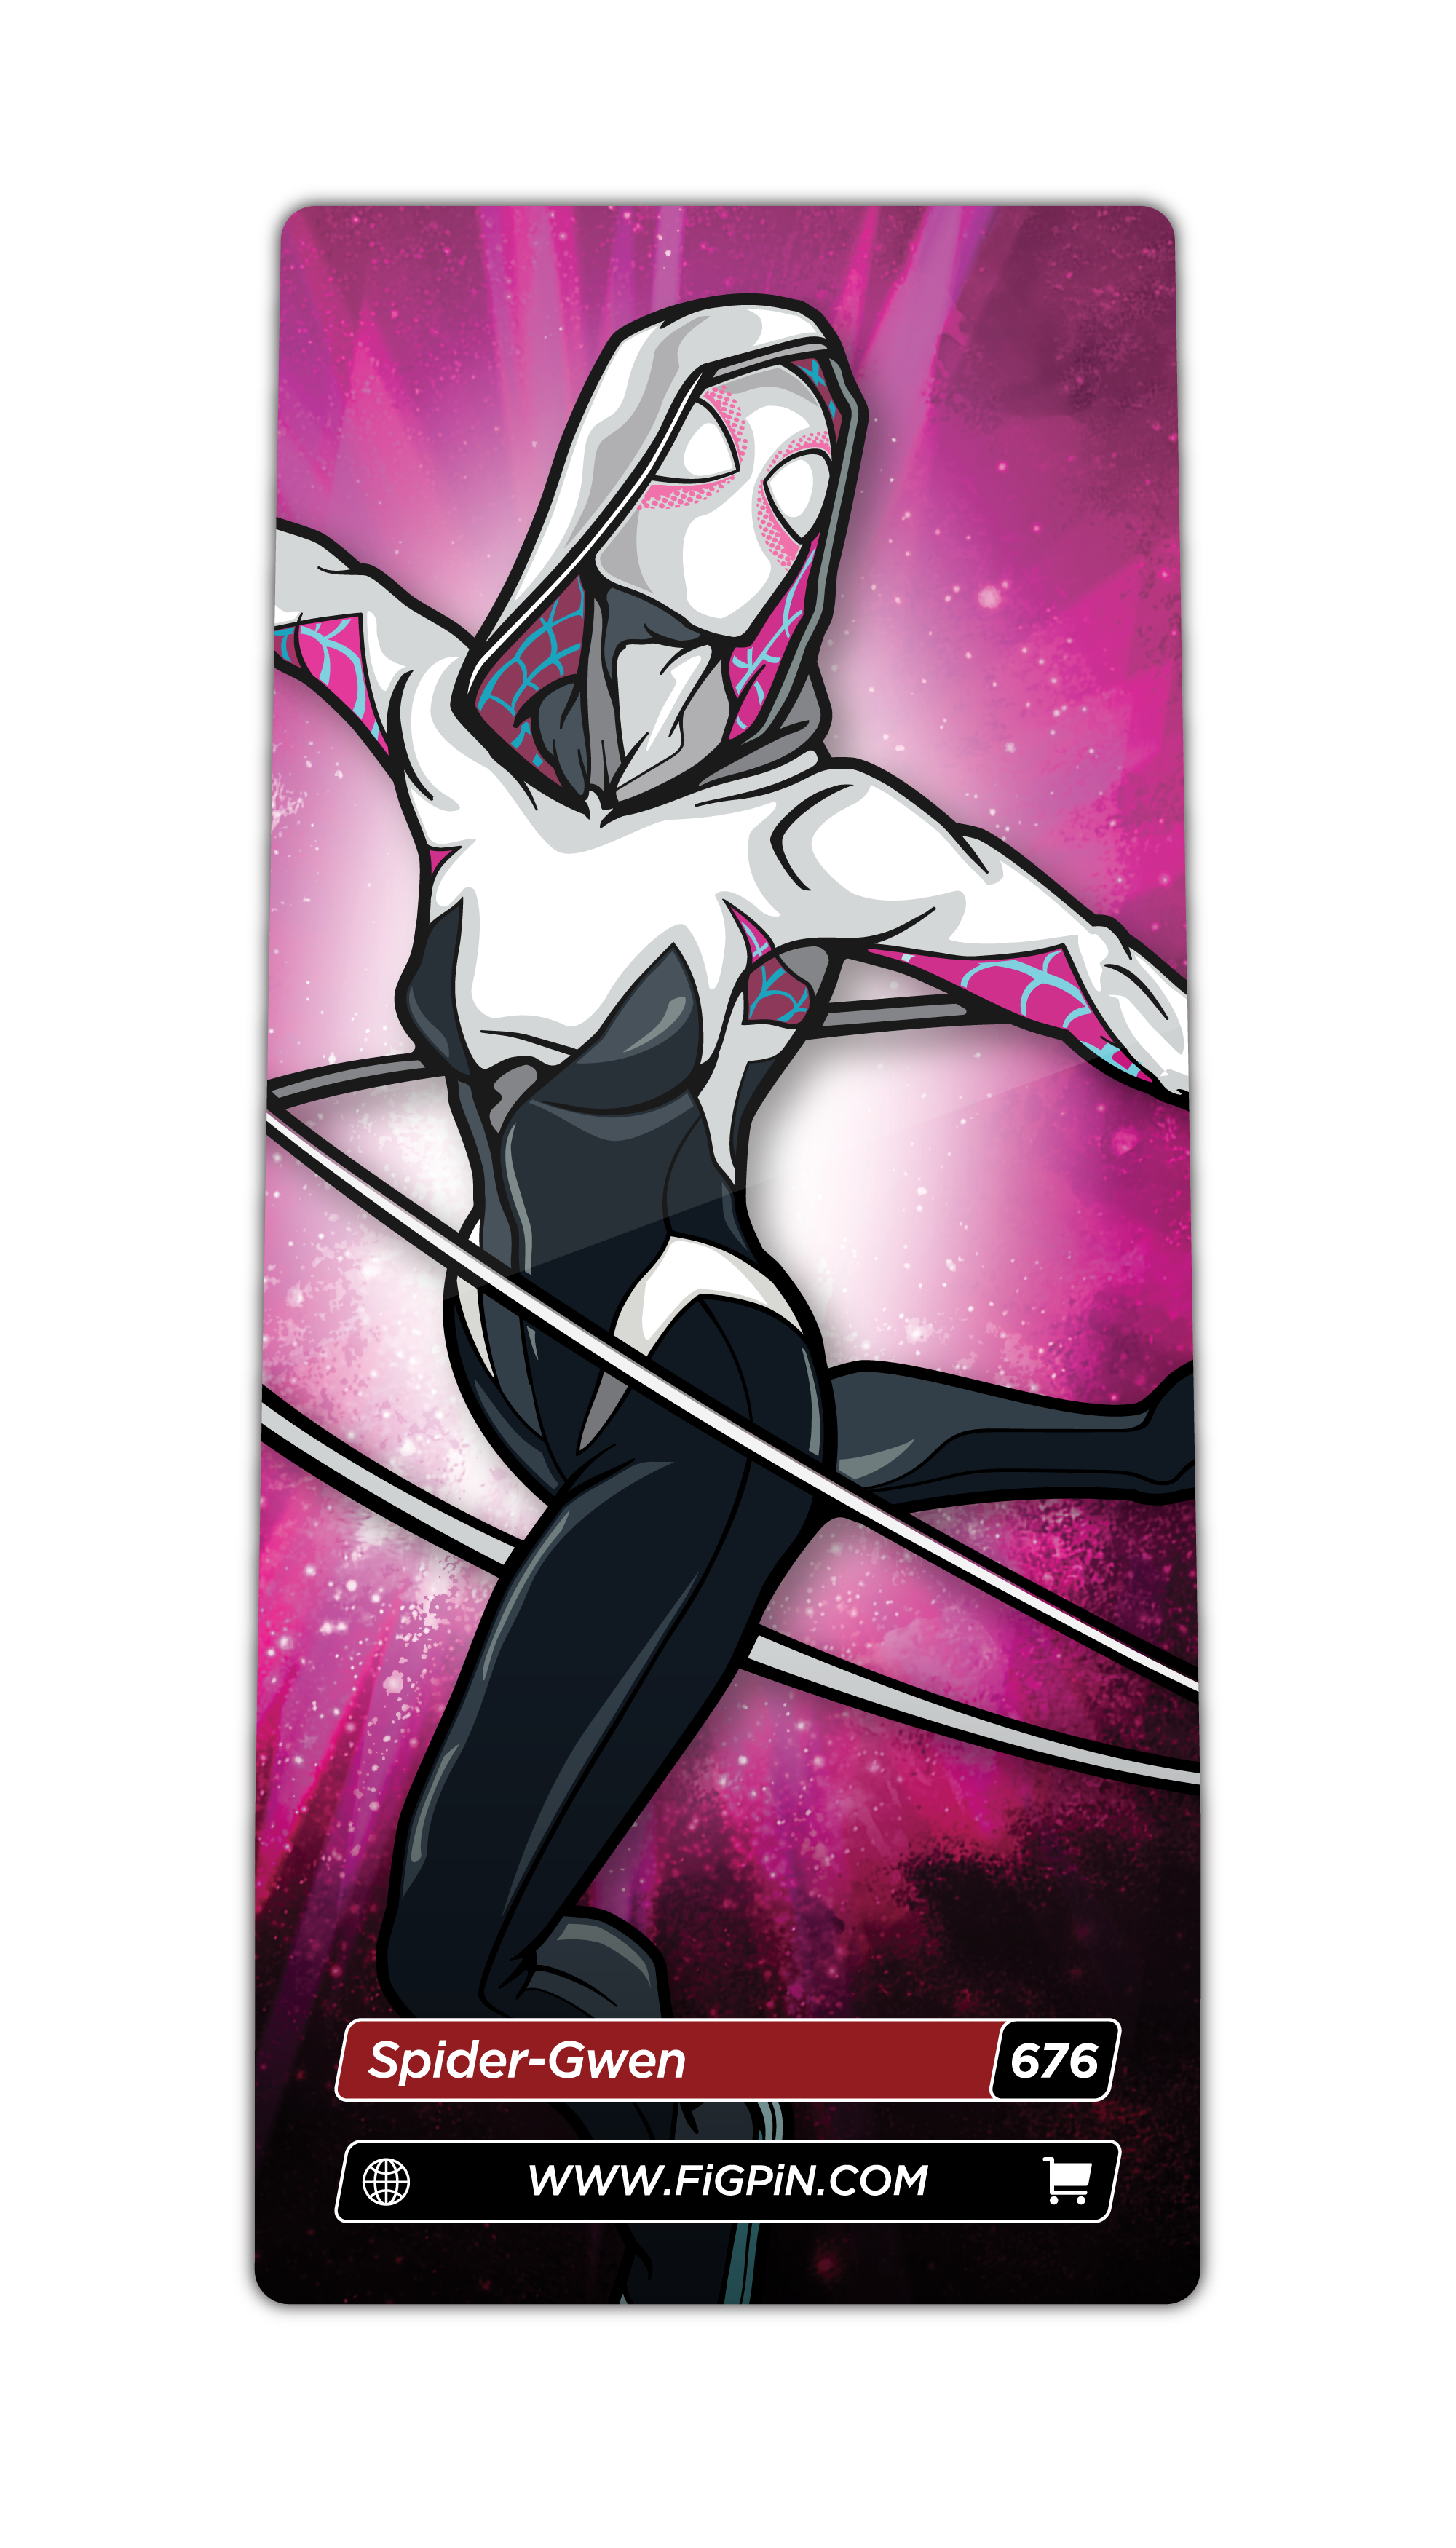 Spider-Gwen (676)